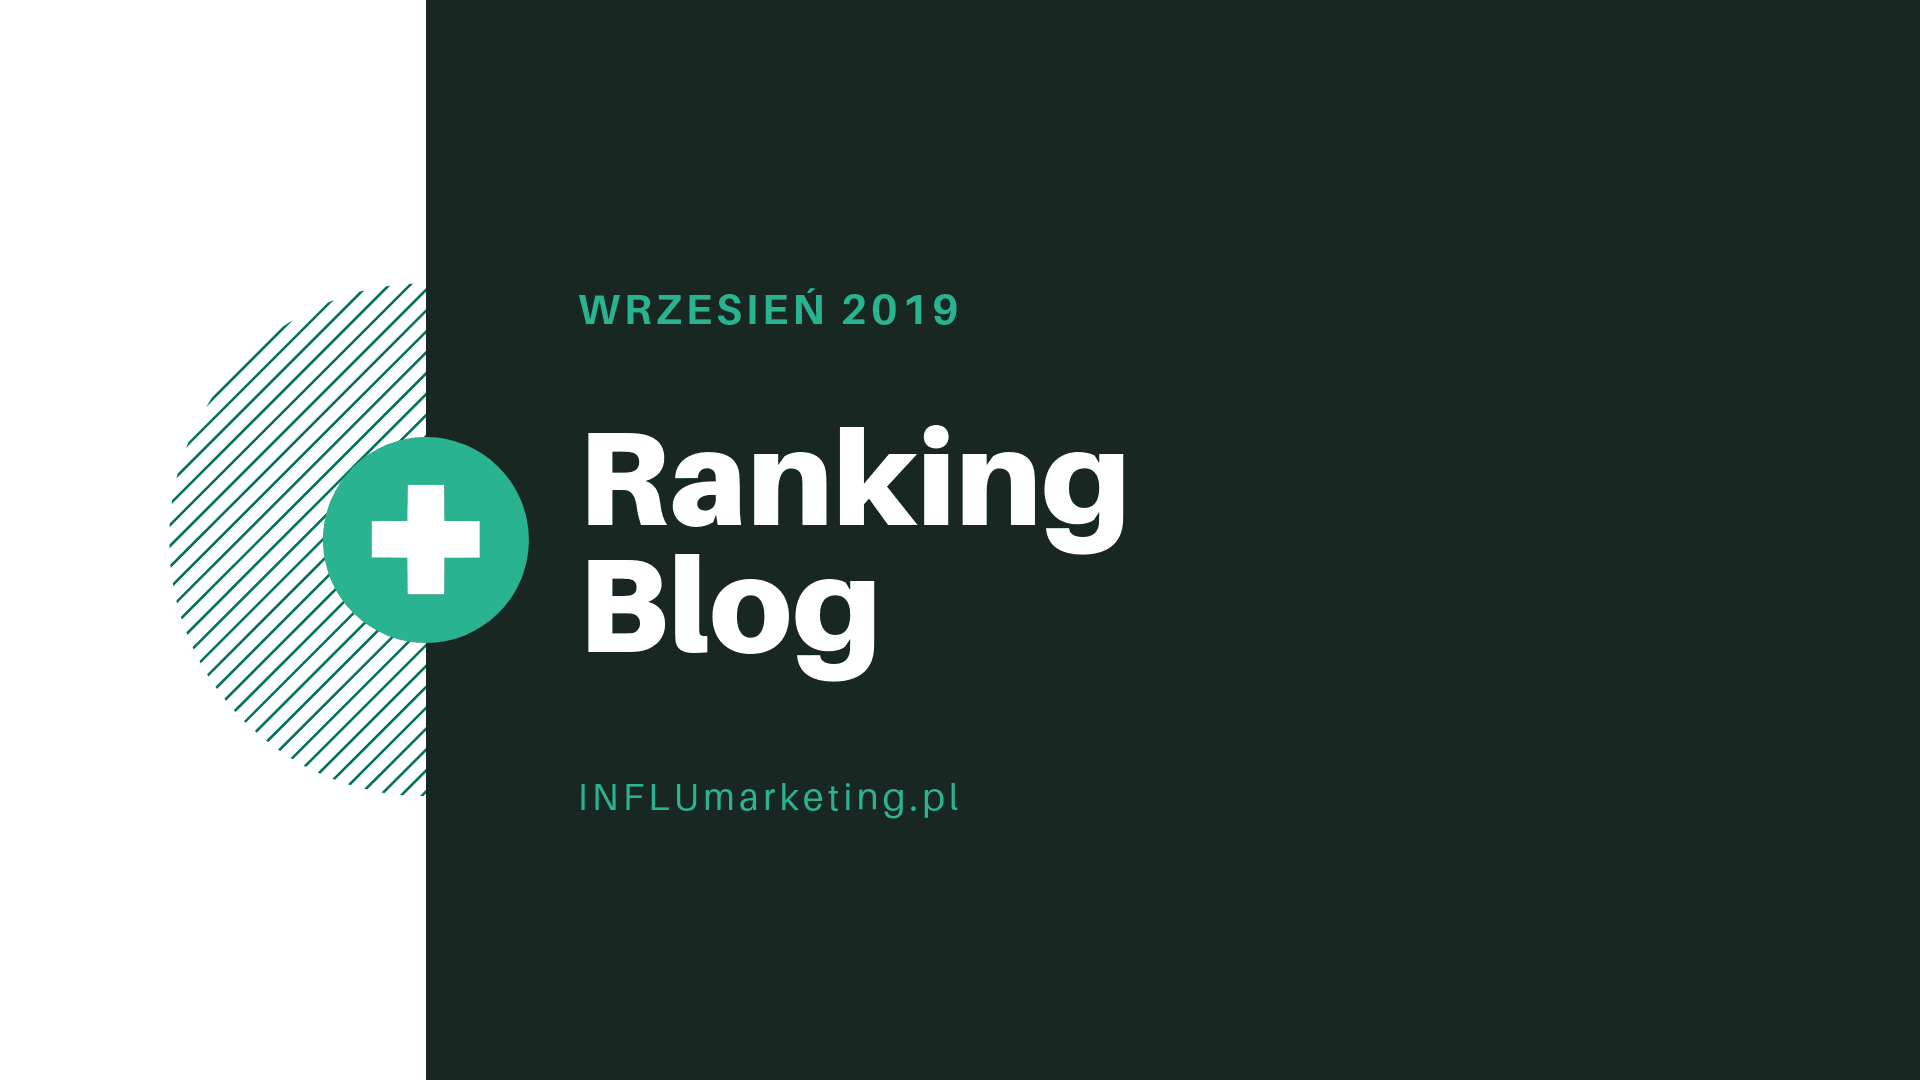 ranking blog polska wrzesień 2019